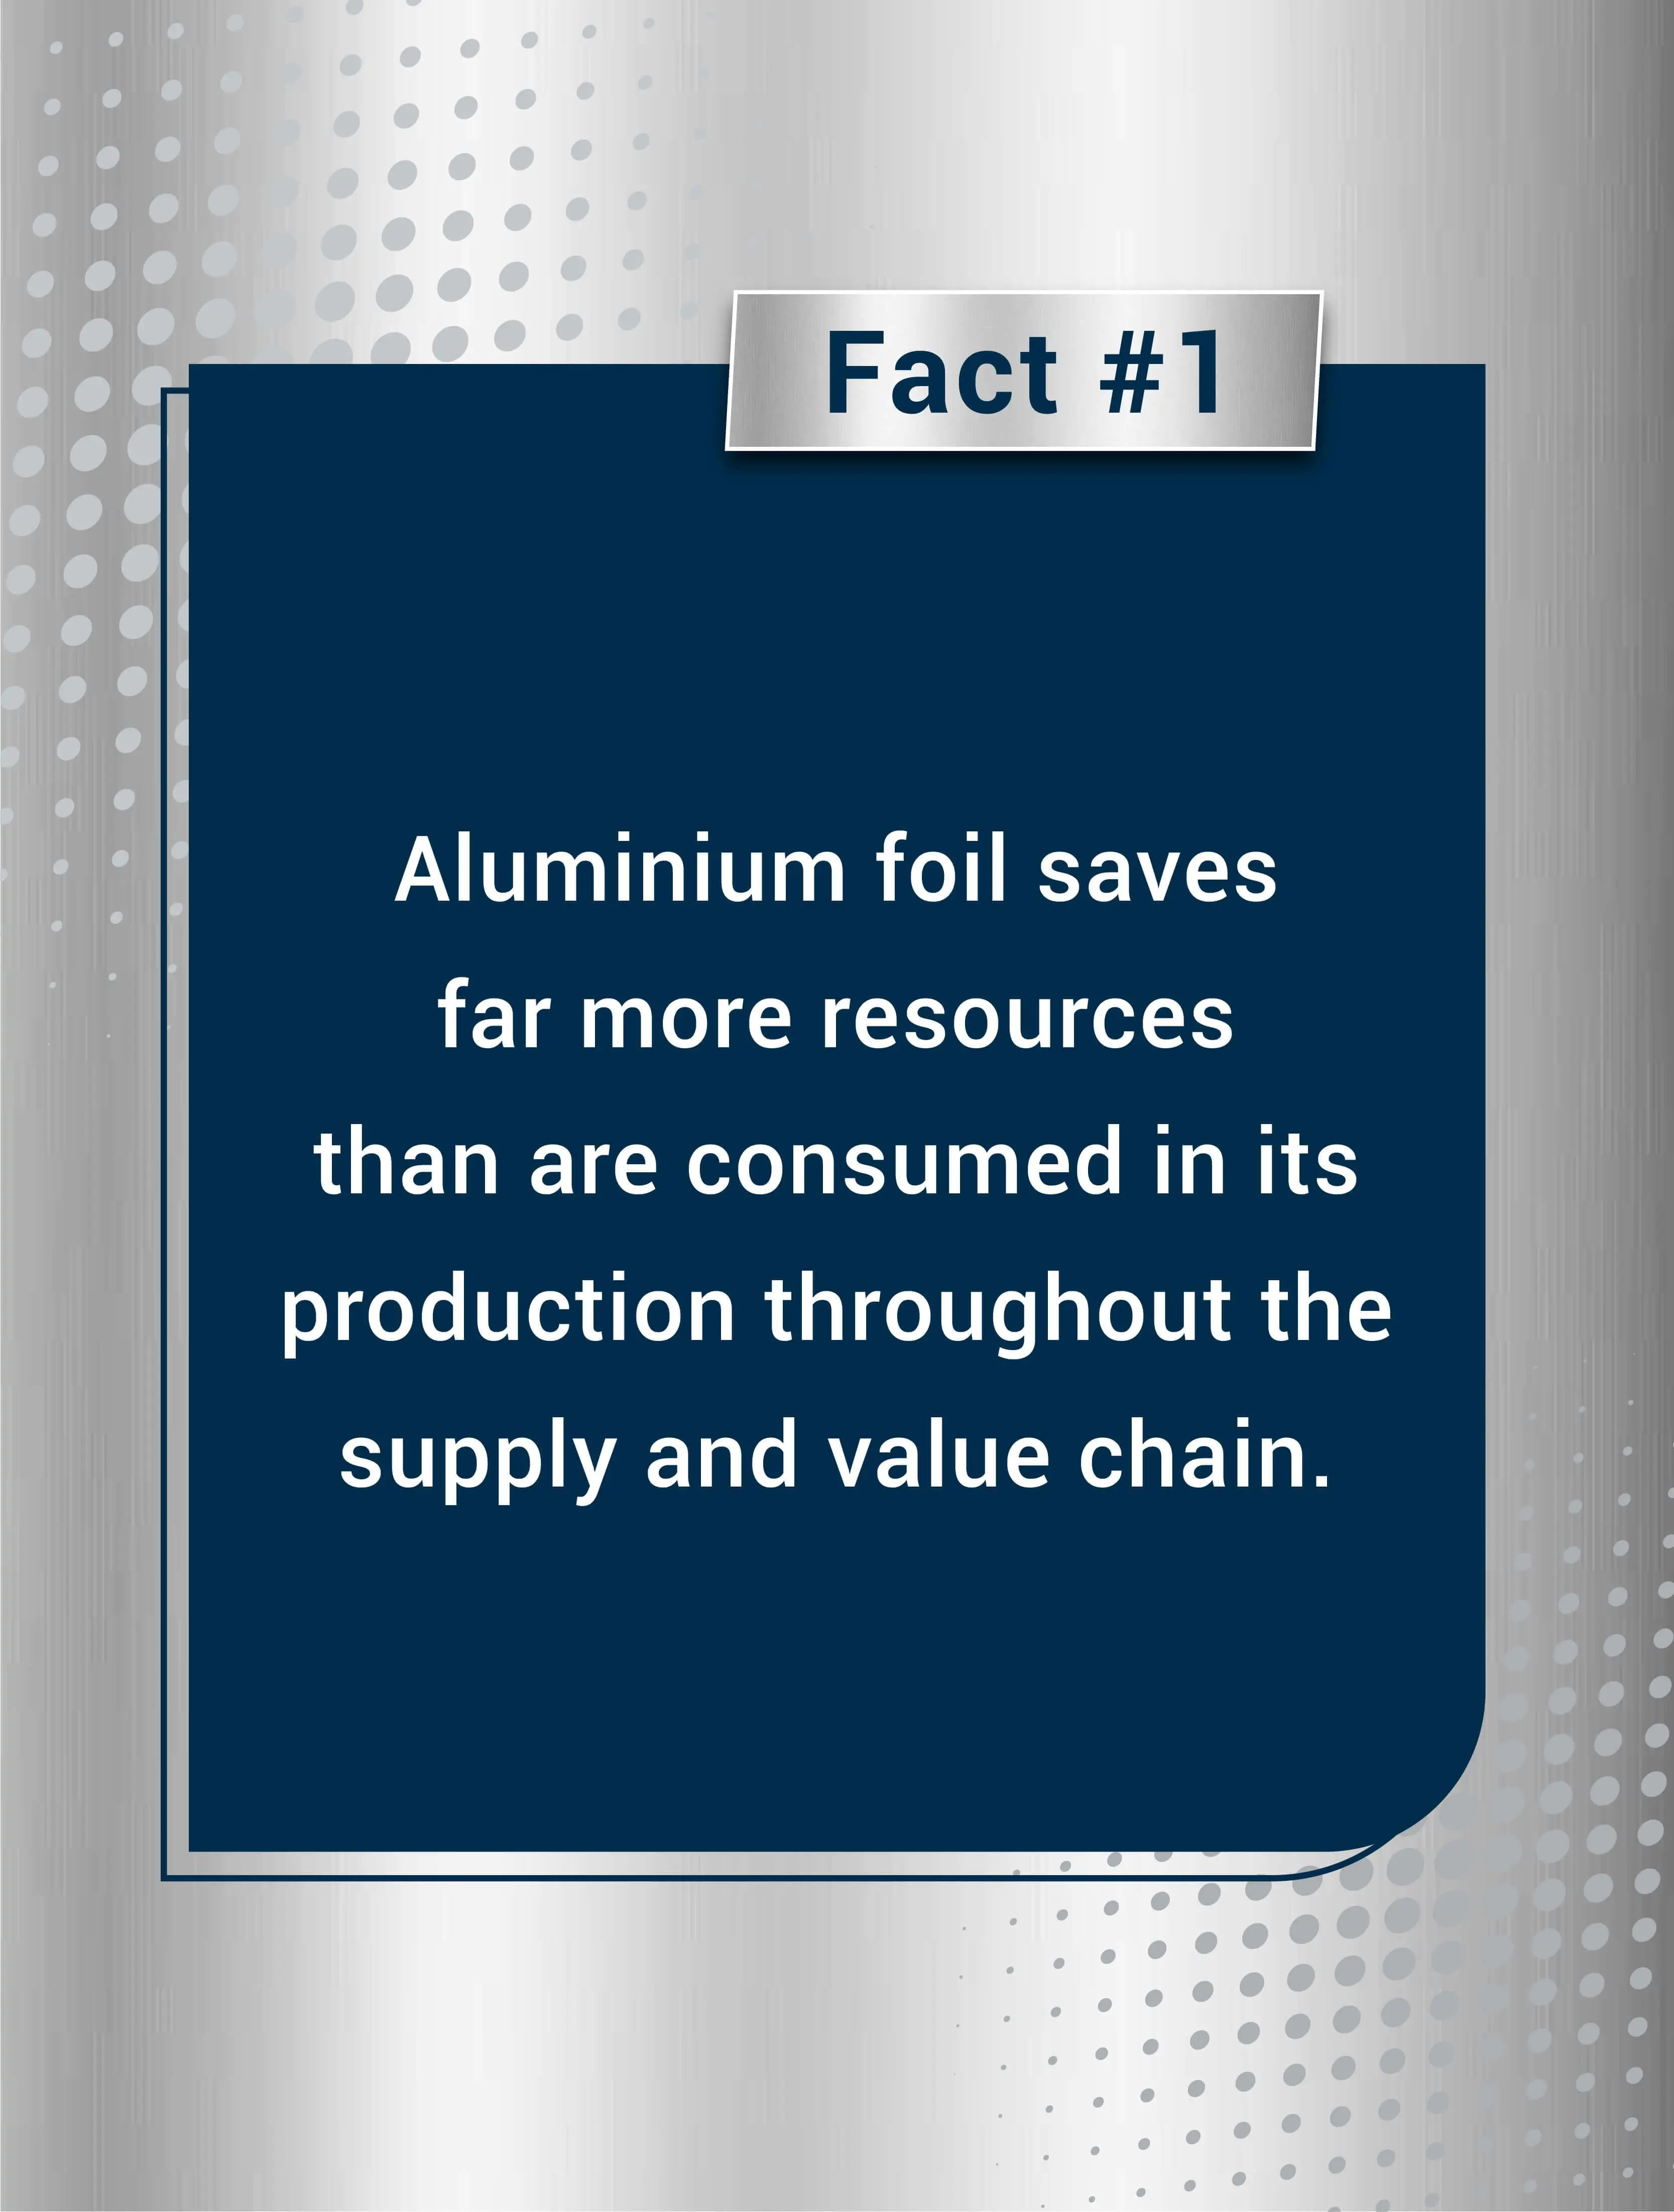 Top five aluminium foil manufacturers in the U.S.